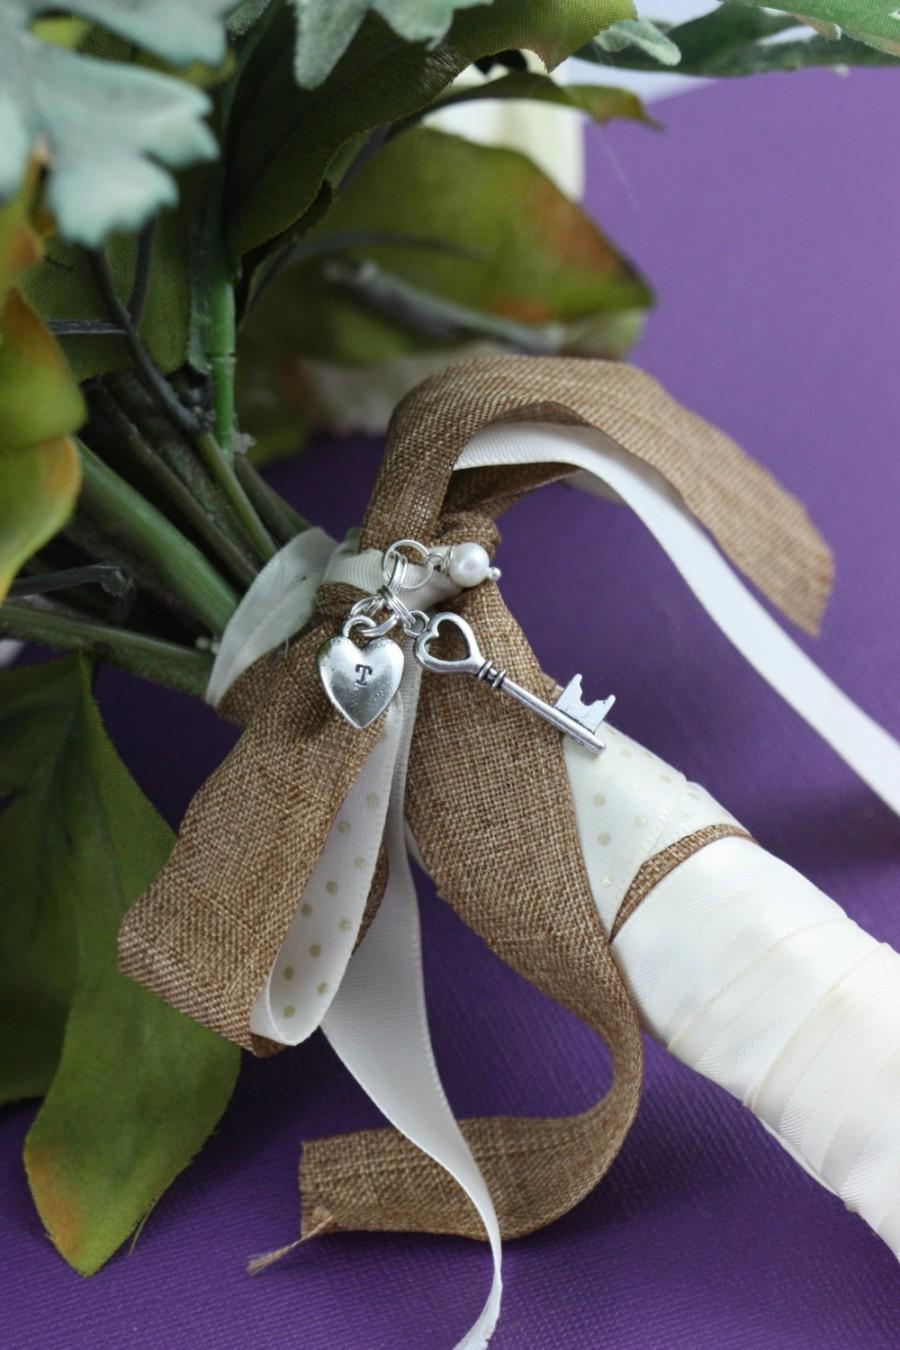 Wedding - SALE - Wedding Bouquet Charm - Key Charm Heart Charm - Personalized Initial - Key to My Heart - Personalized Bouquet - Wedding Shower Gift